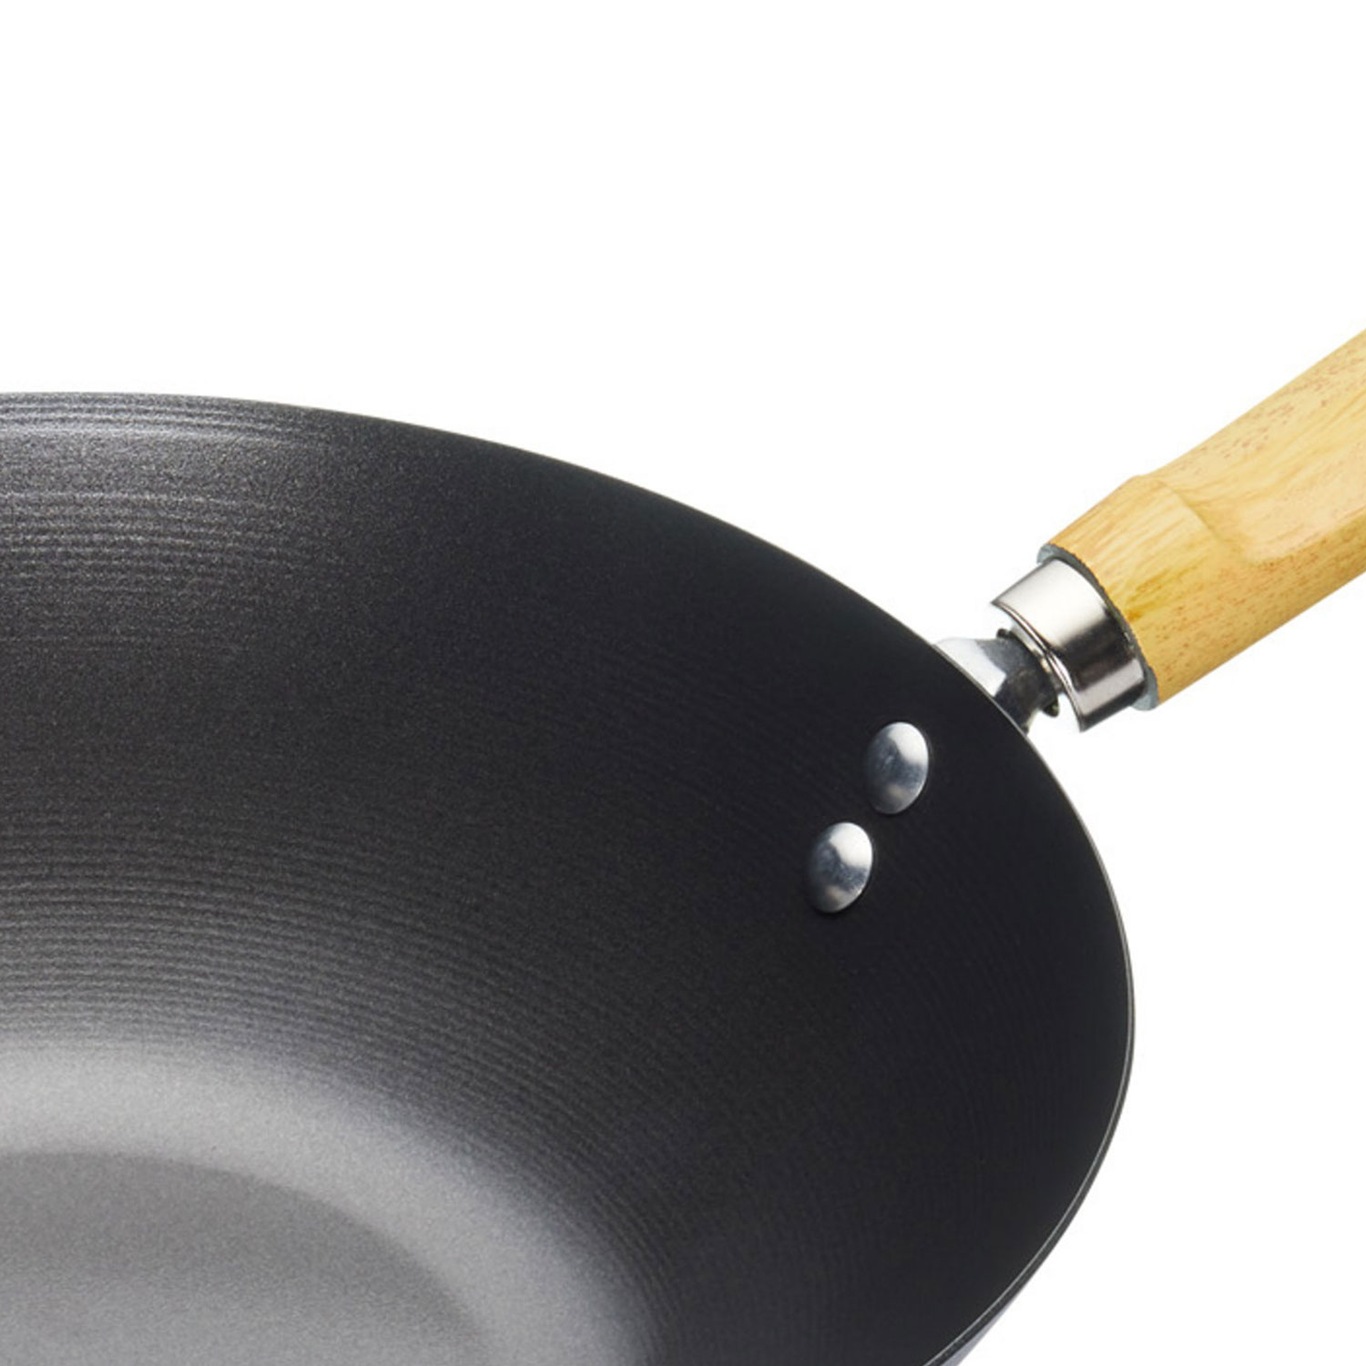 https://royaldesign.com/image/2/kitchen-craft-worldofflavours-wood-hand-steel-nonstick-wok-25cm-3?w=800&quality=80